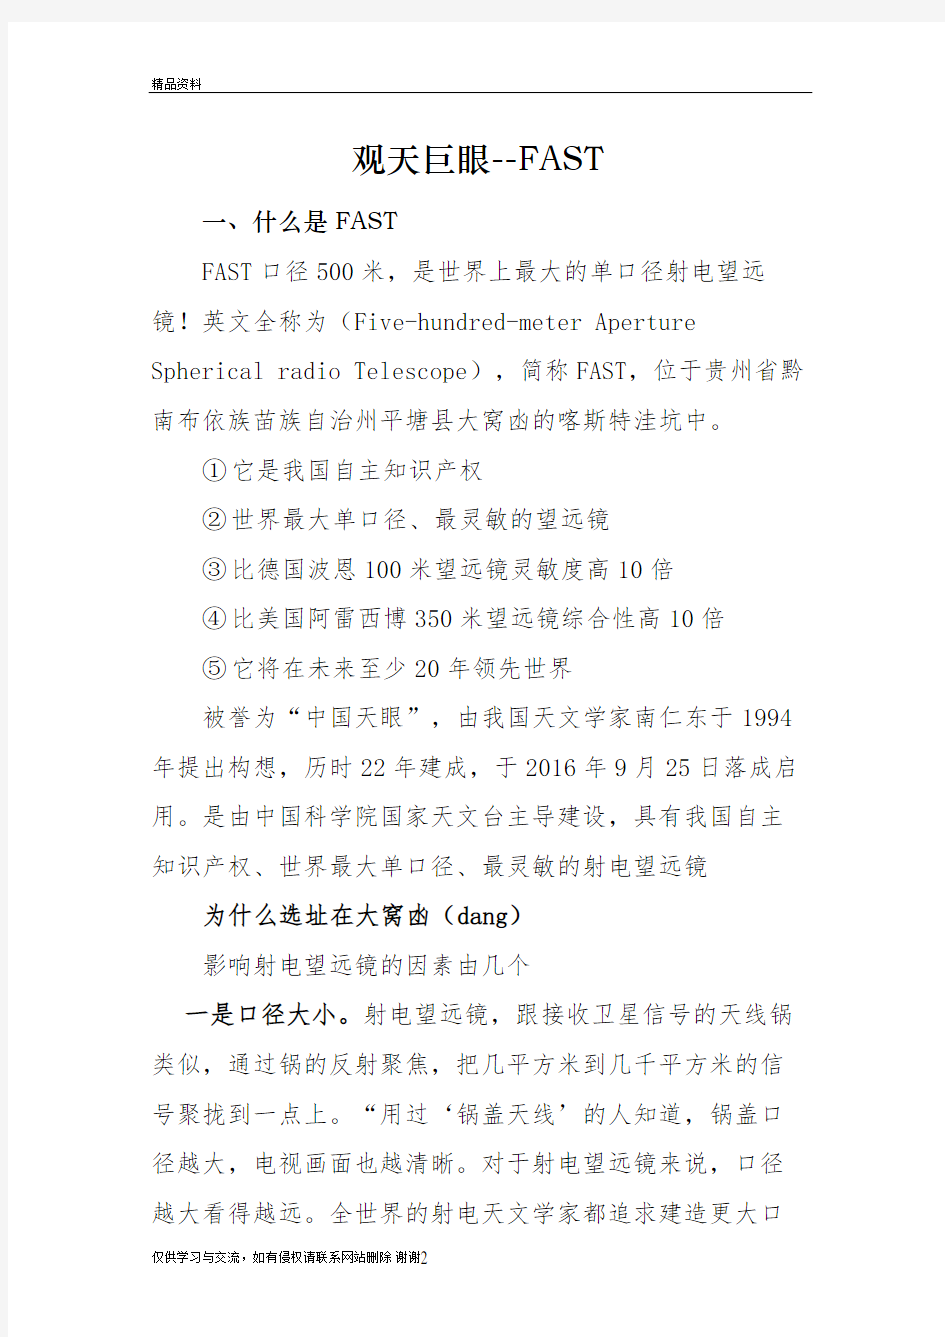 中国天眼-FAST教程文件